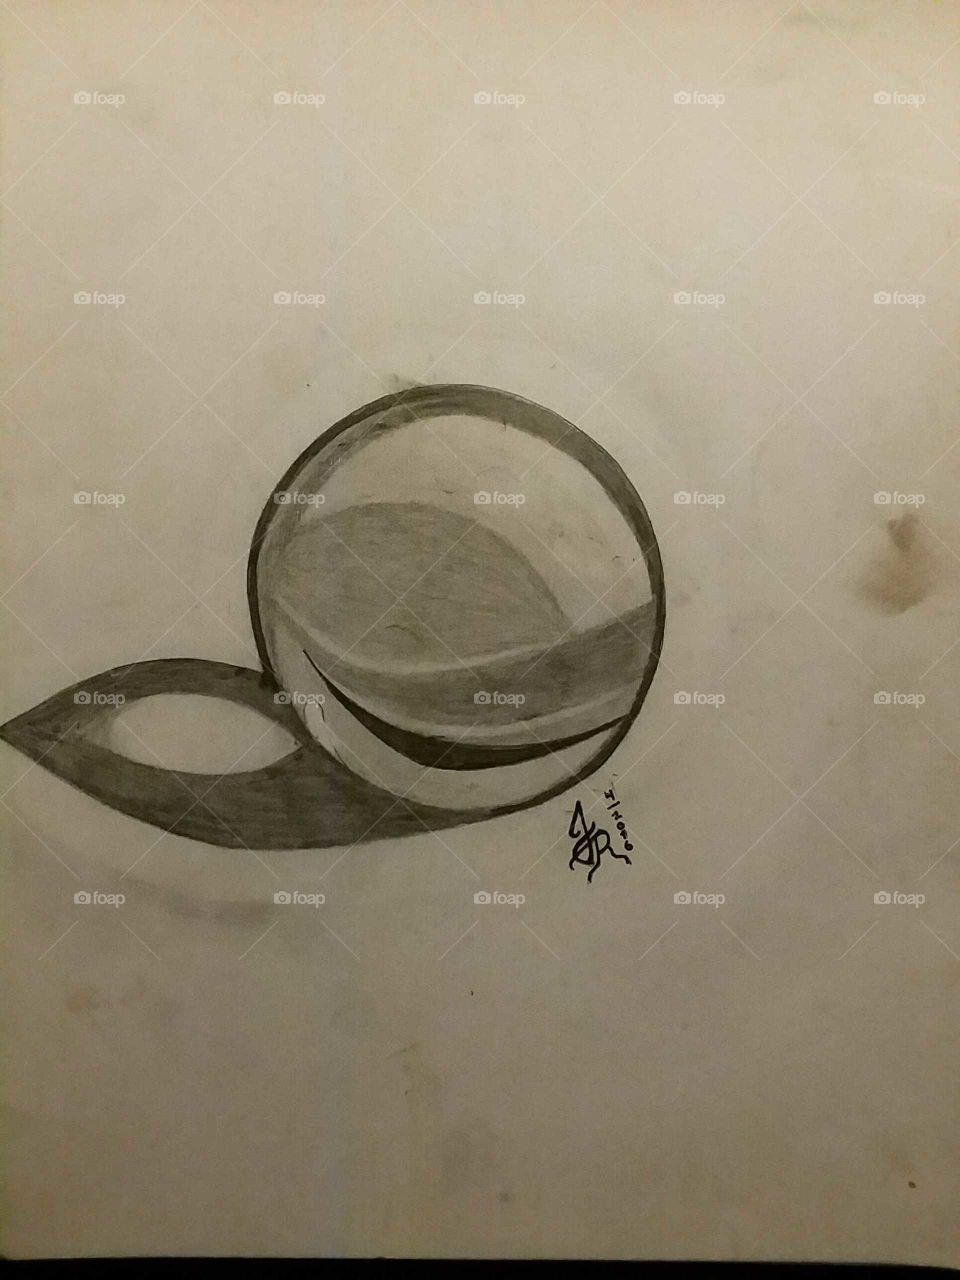 My Pencil Drawings; Sphere